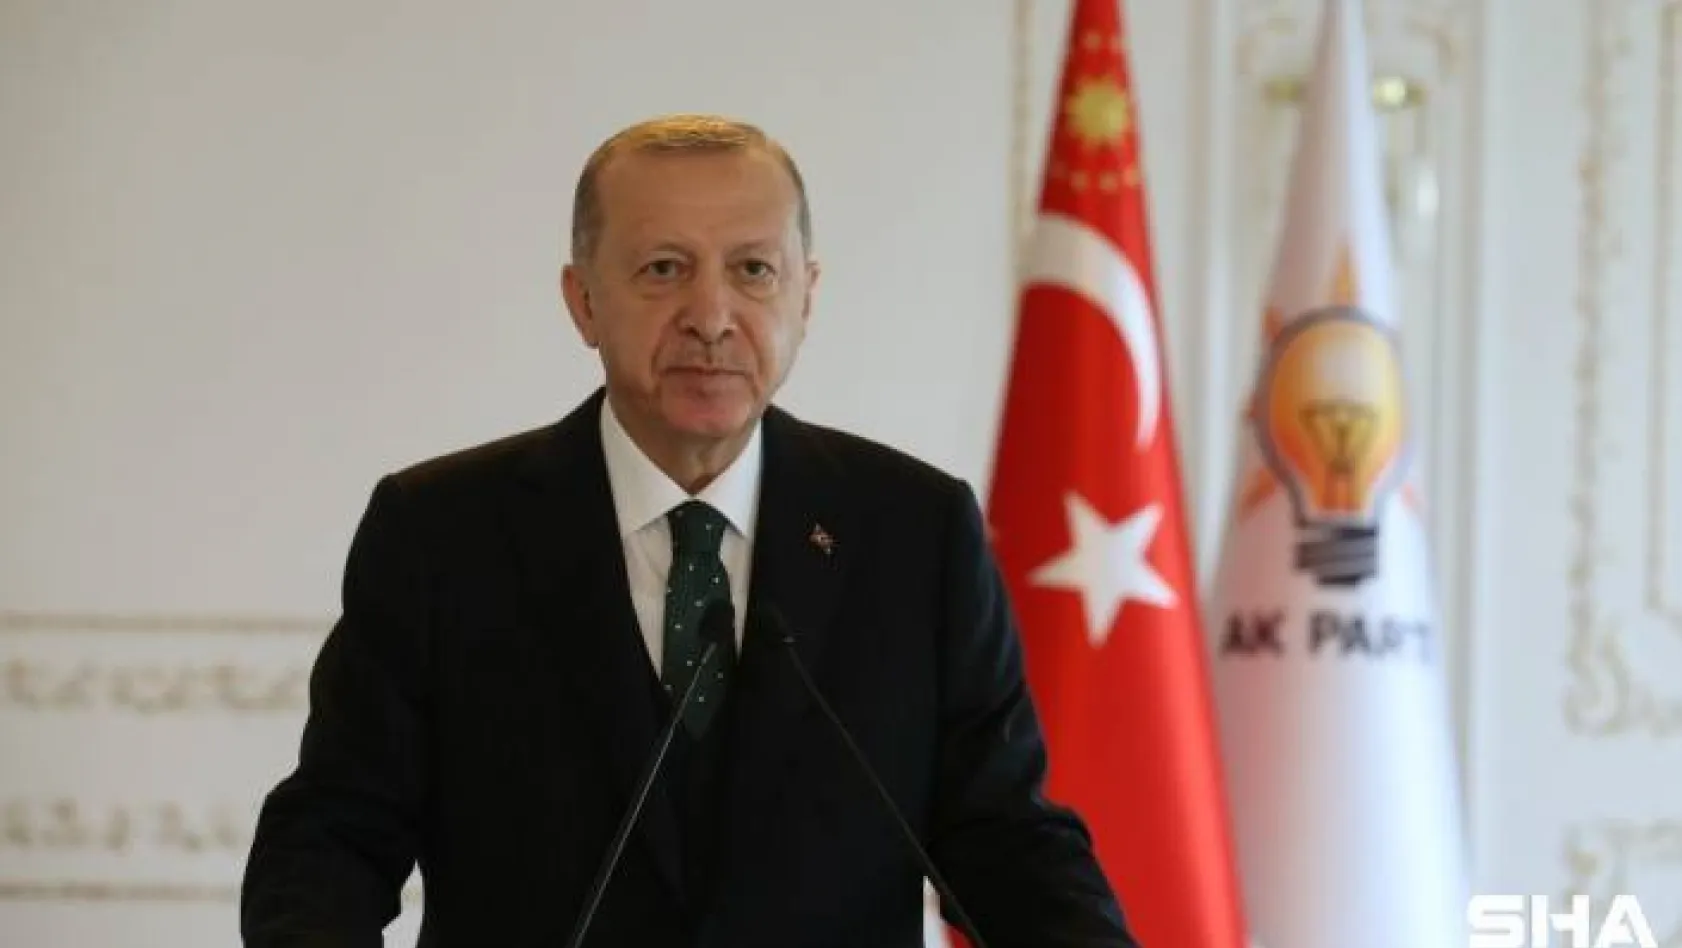 Cumhurbaşkanı Erdoğan: "İlave tedbirler almak durumunda kalabiliriz"